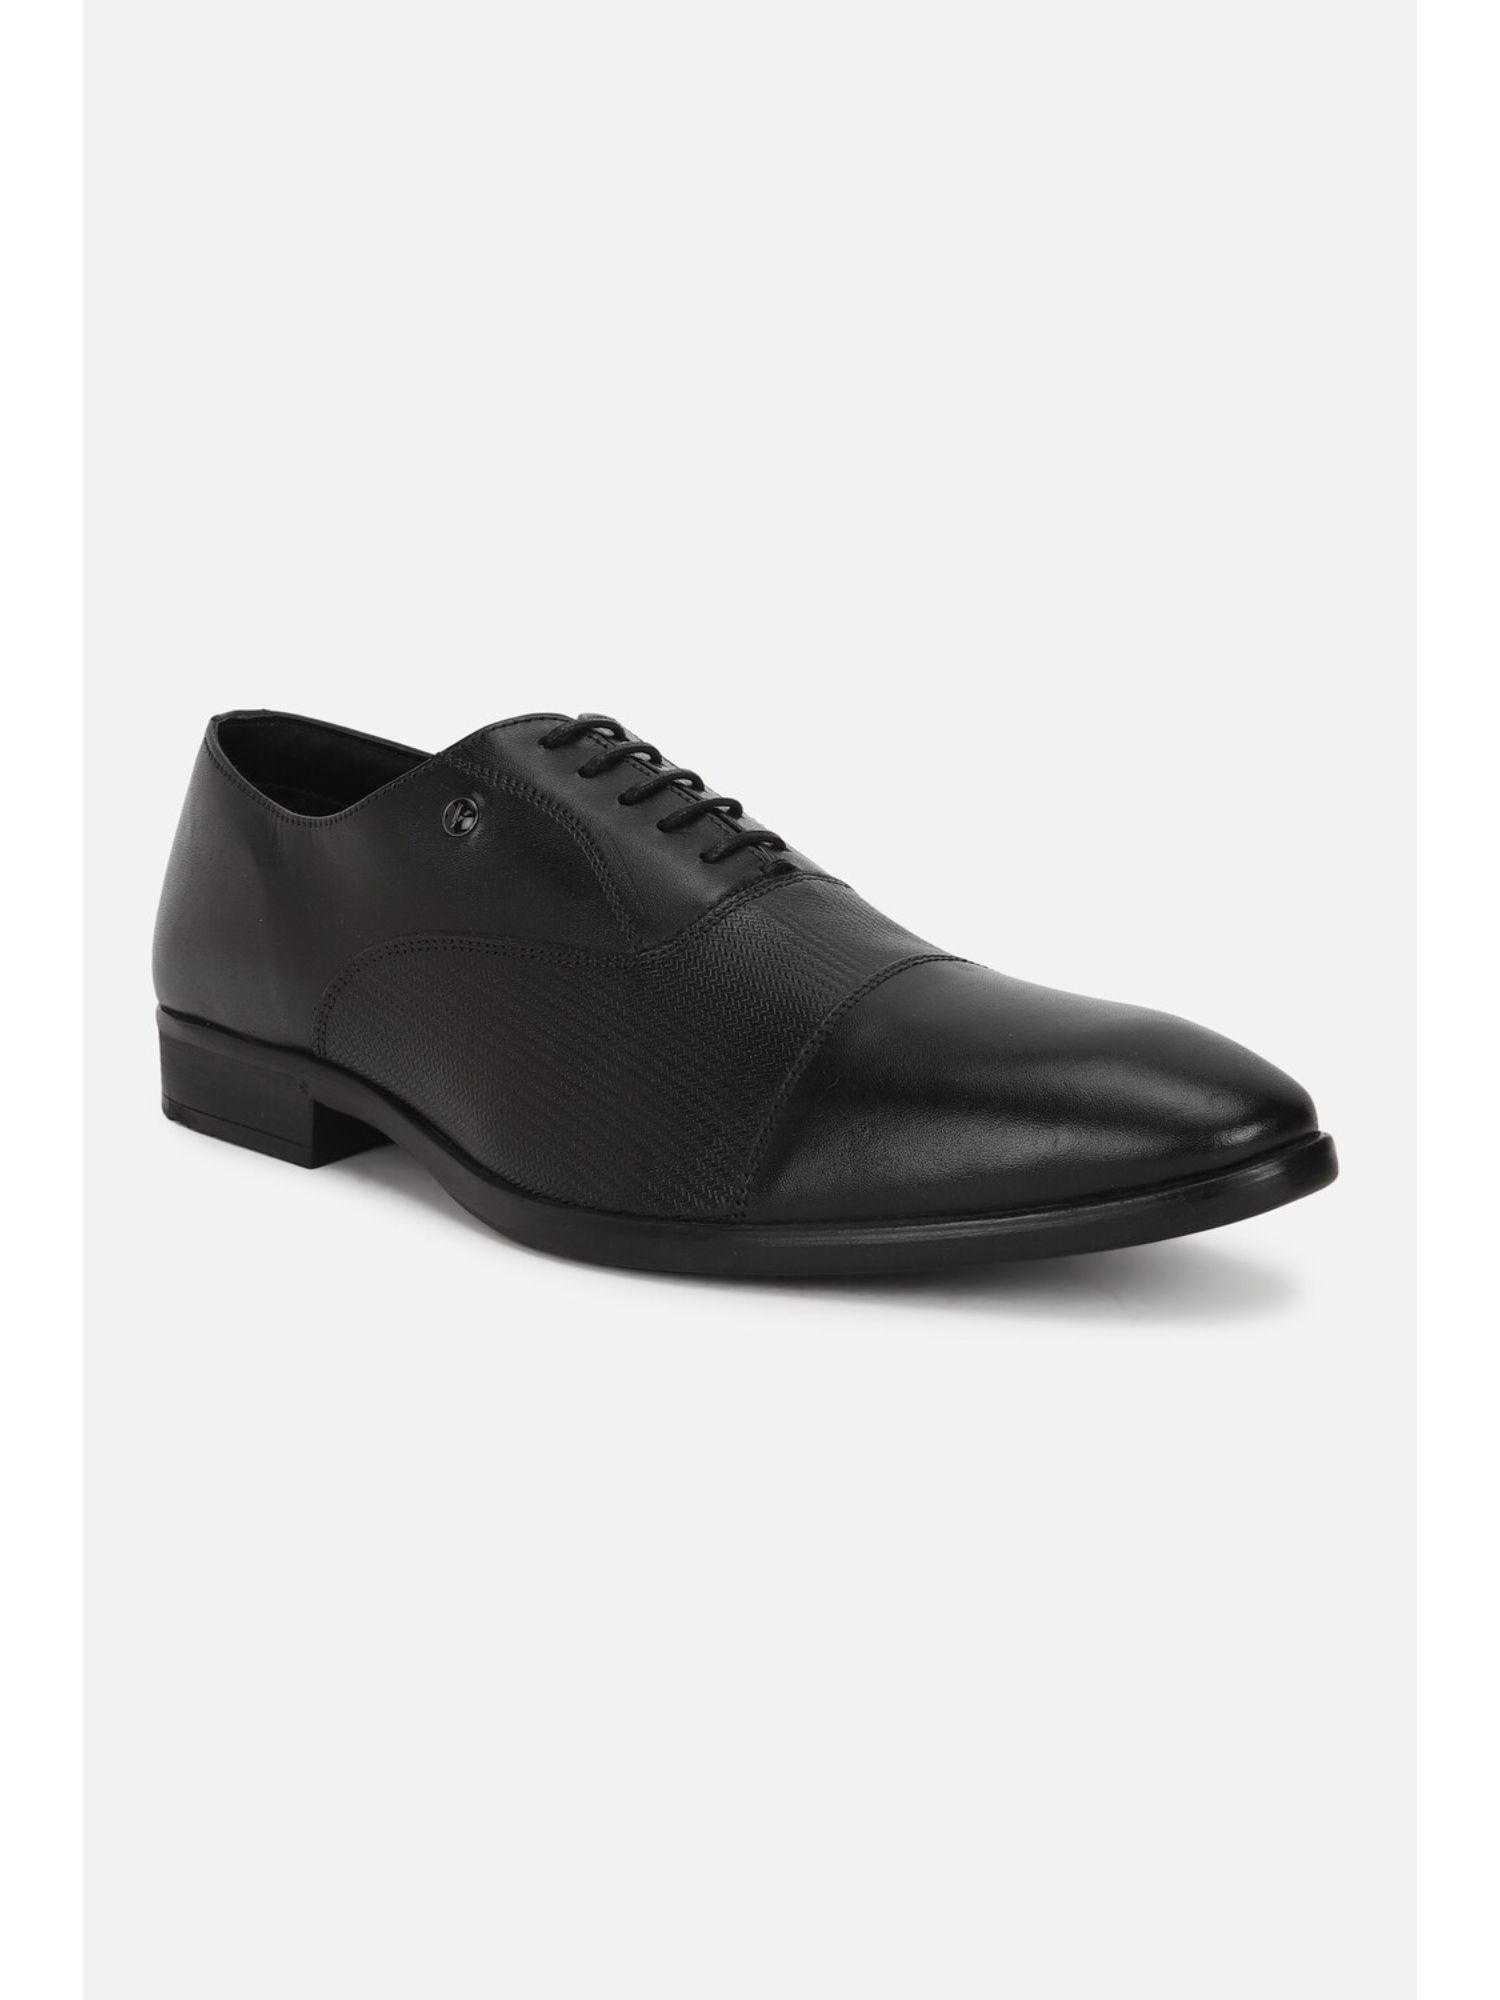 men-black-formal-oxford-shoes